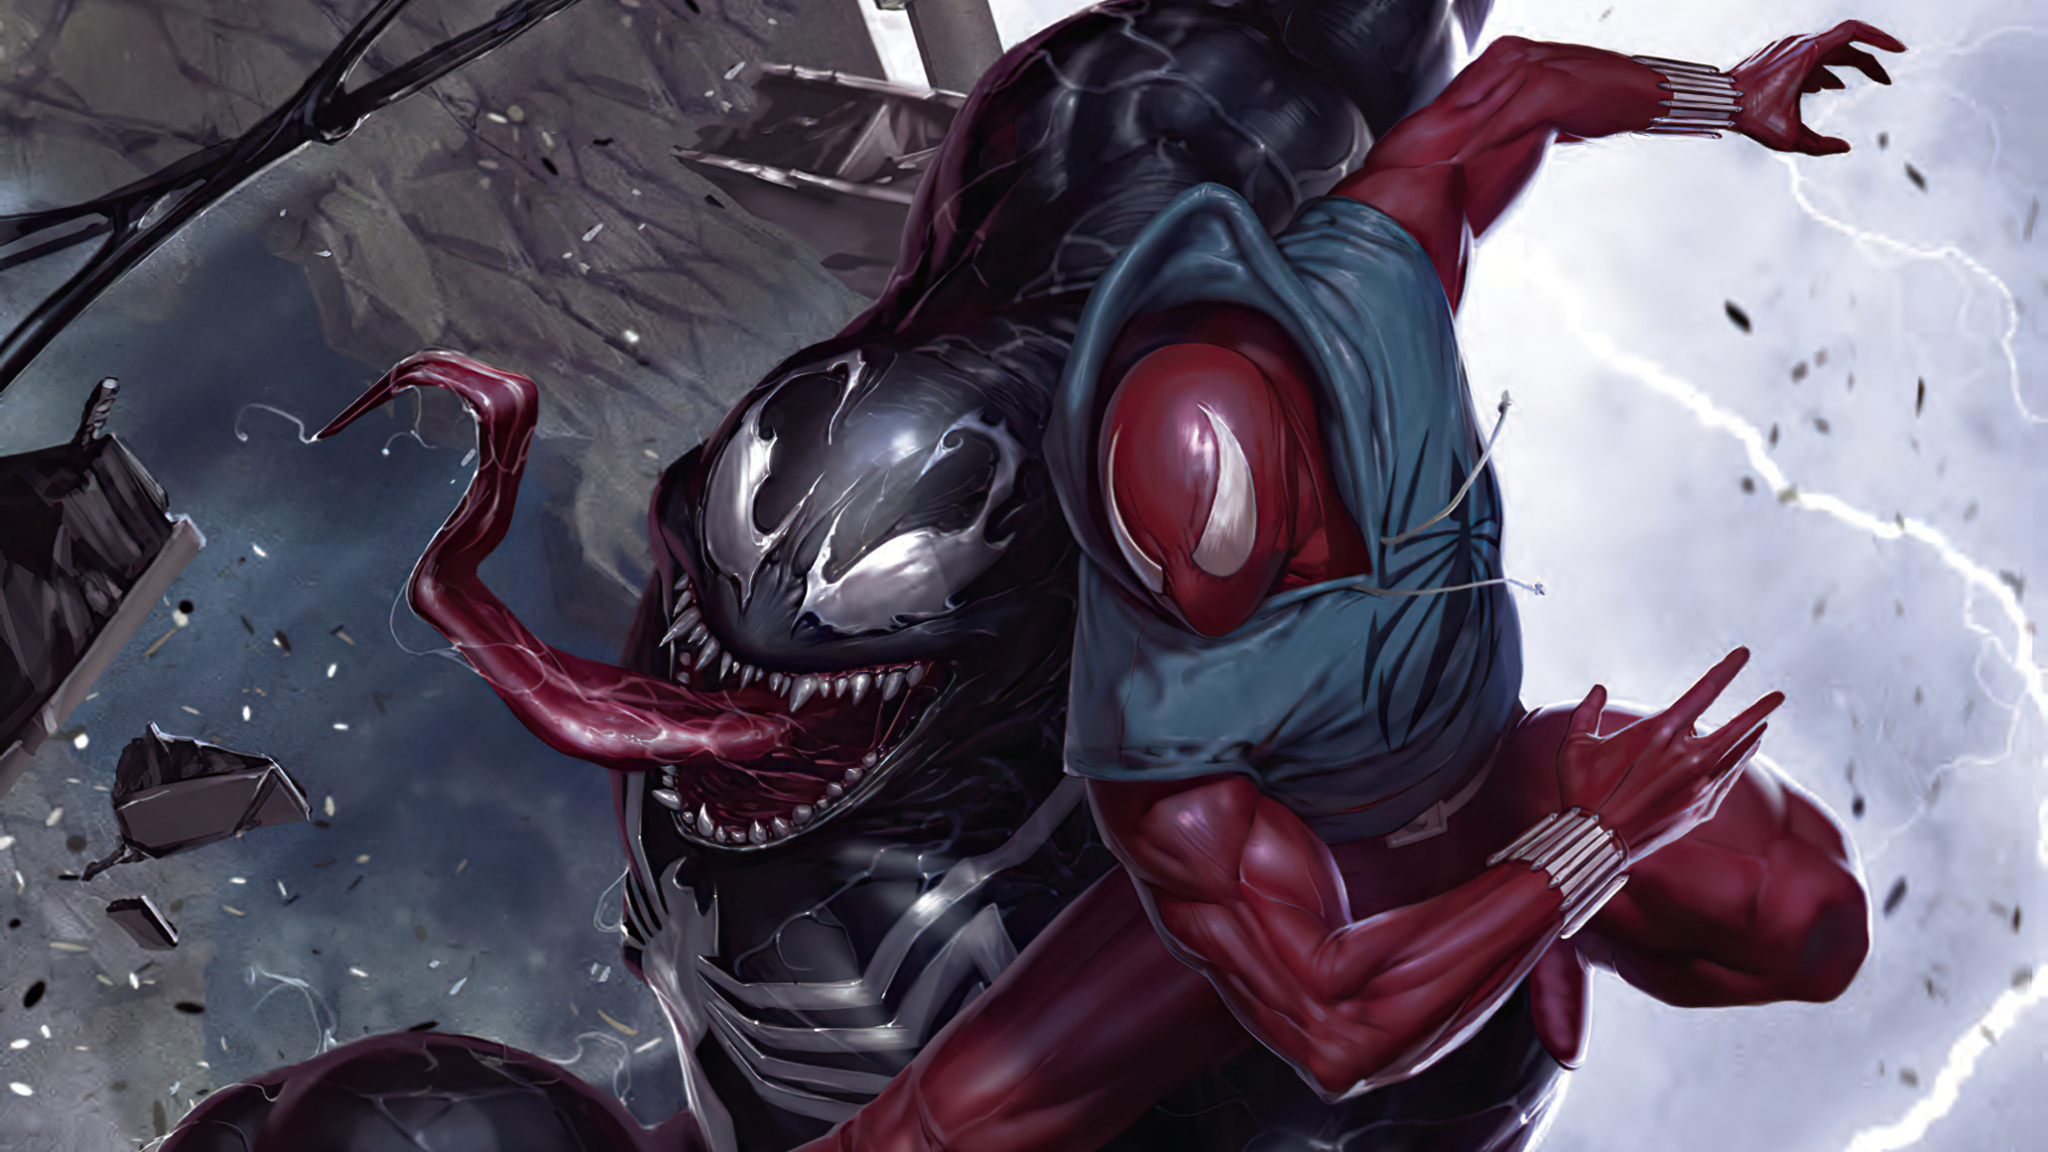 2048x1152 Resolution Spider Man Vs Venom Comic Art Marvel 2048x1152 Resolution Wallpaper 2567